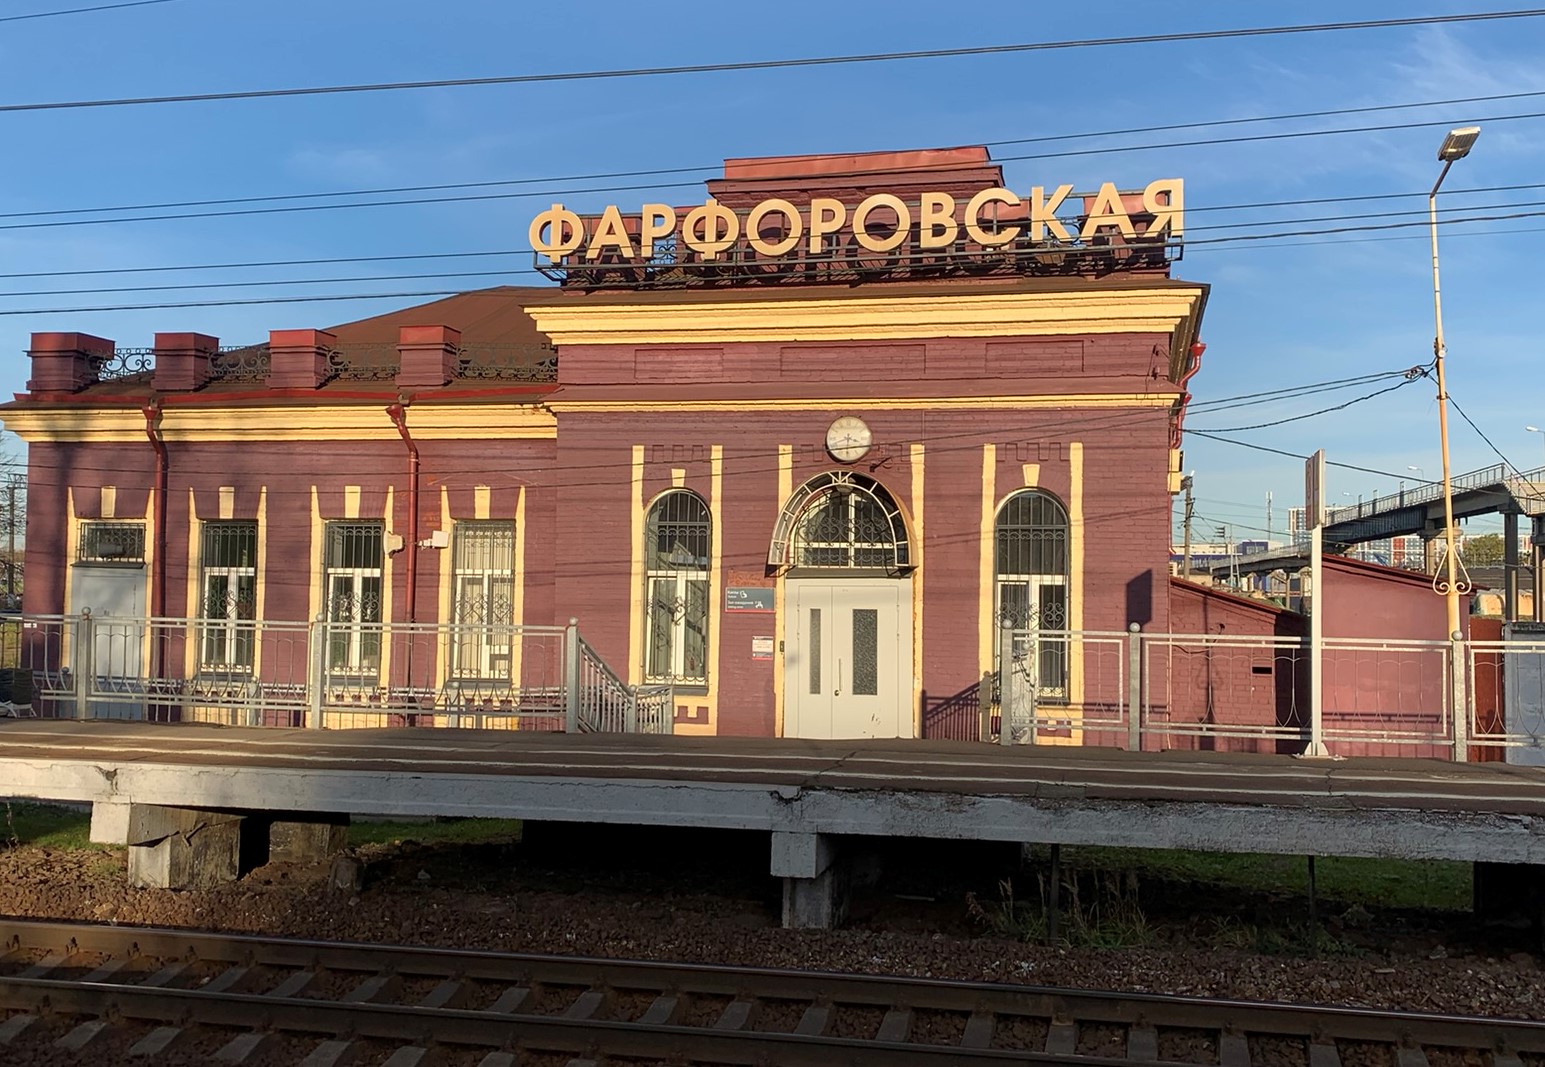 Здание вокзала «Фарфоровского поста»